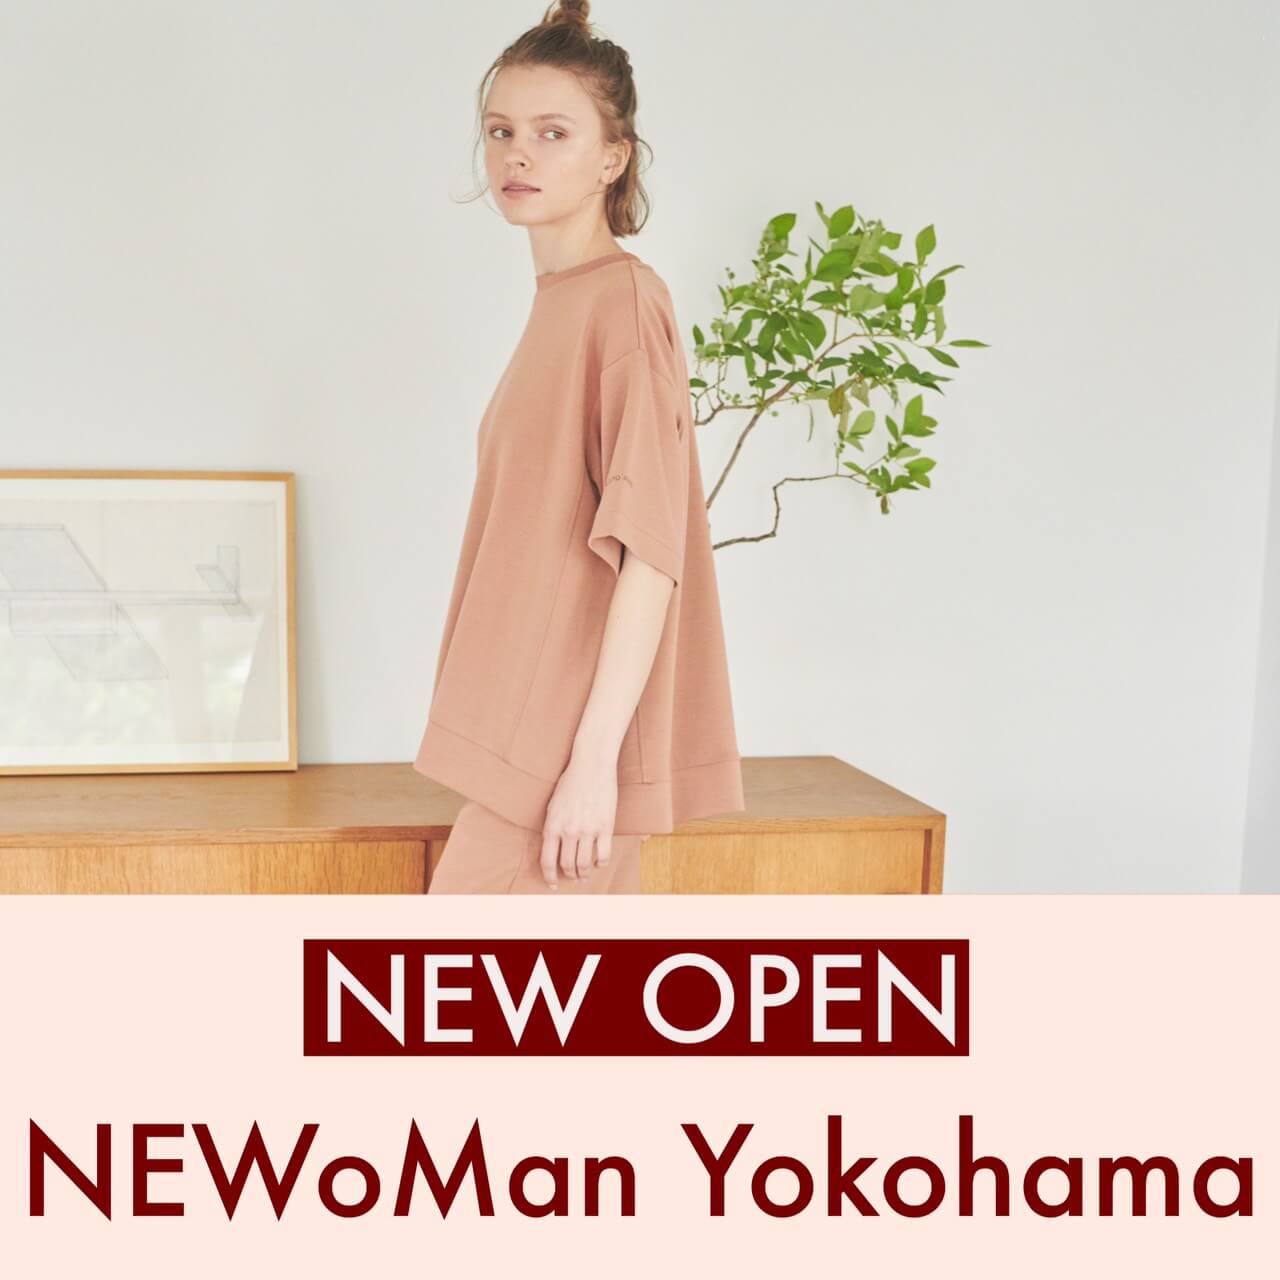 ニュウマン横浜店 8.26(THU) NEW OPEN